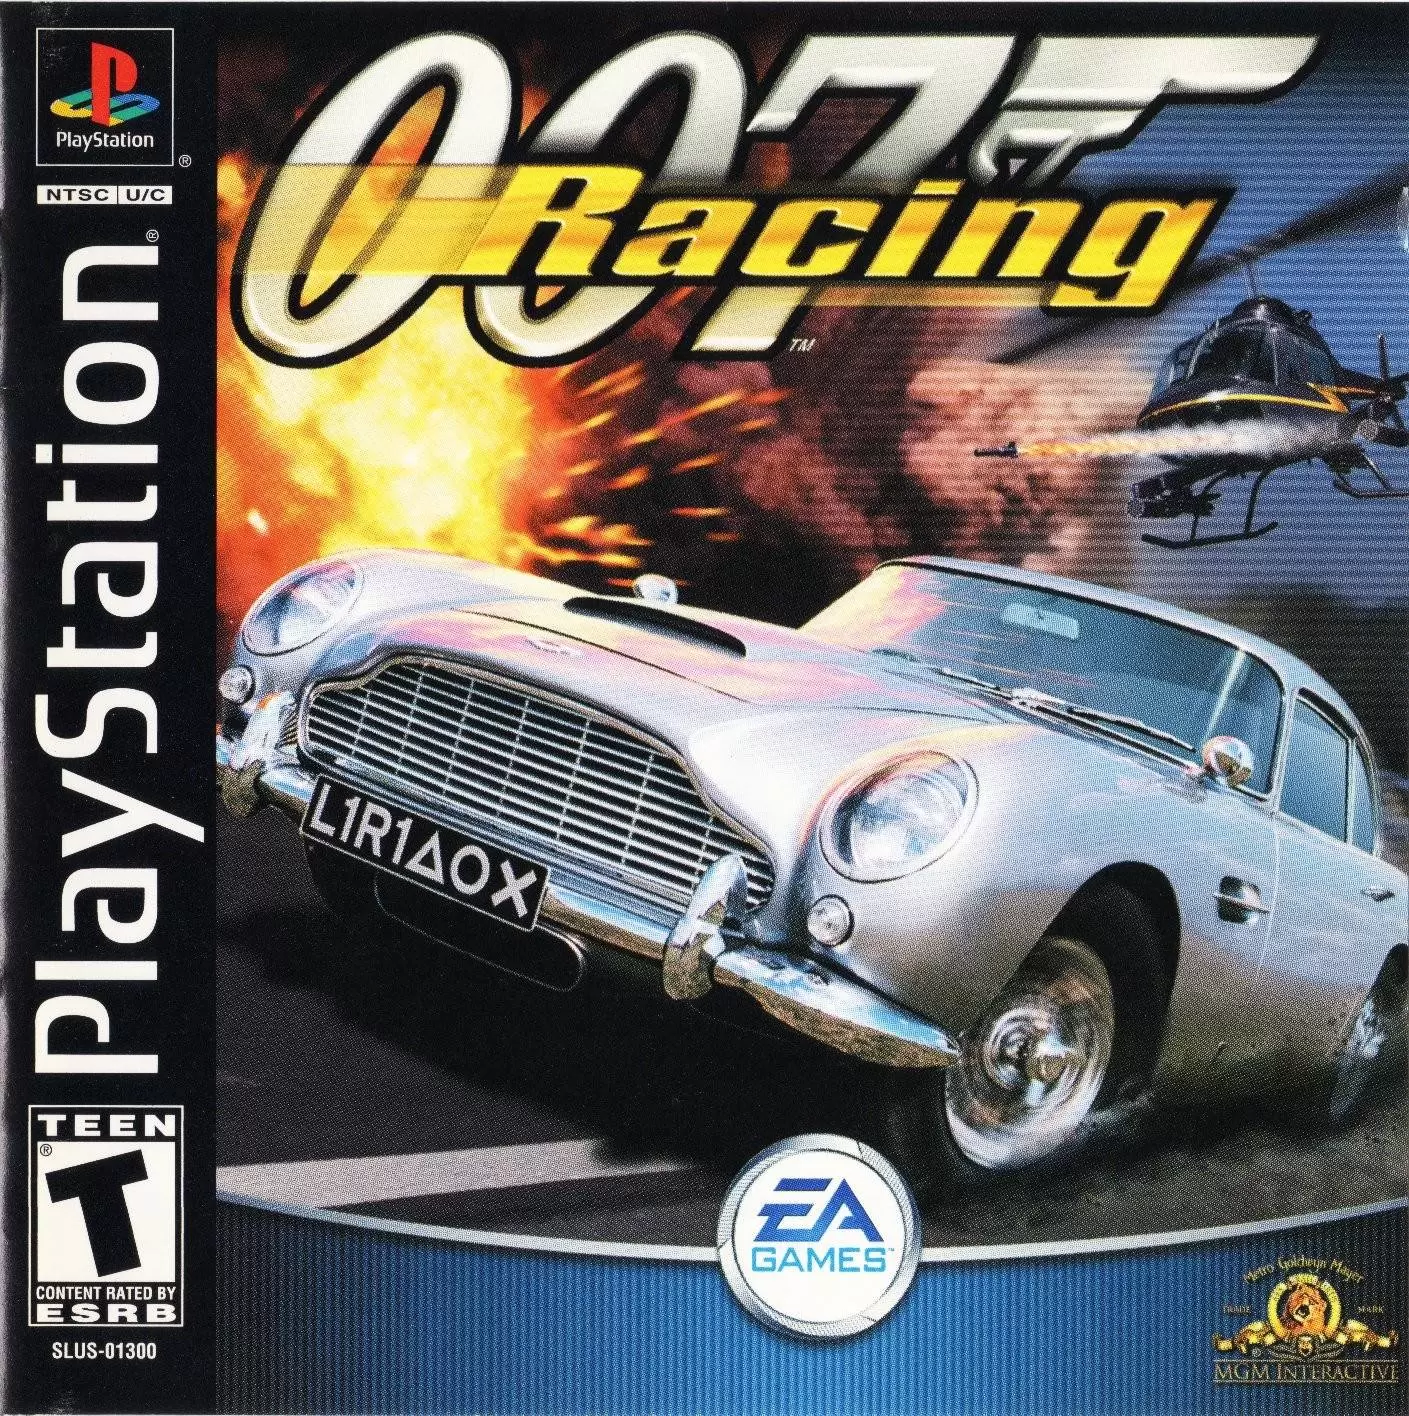 Playstation games - 007: Racing